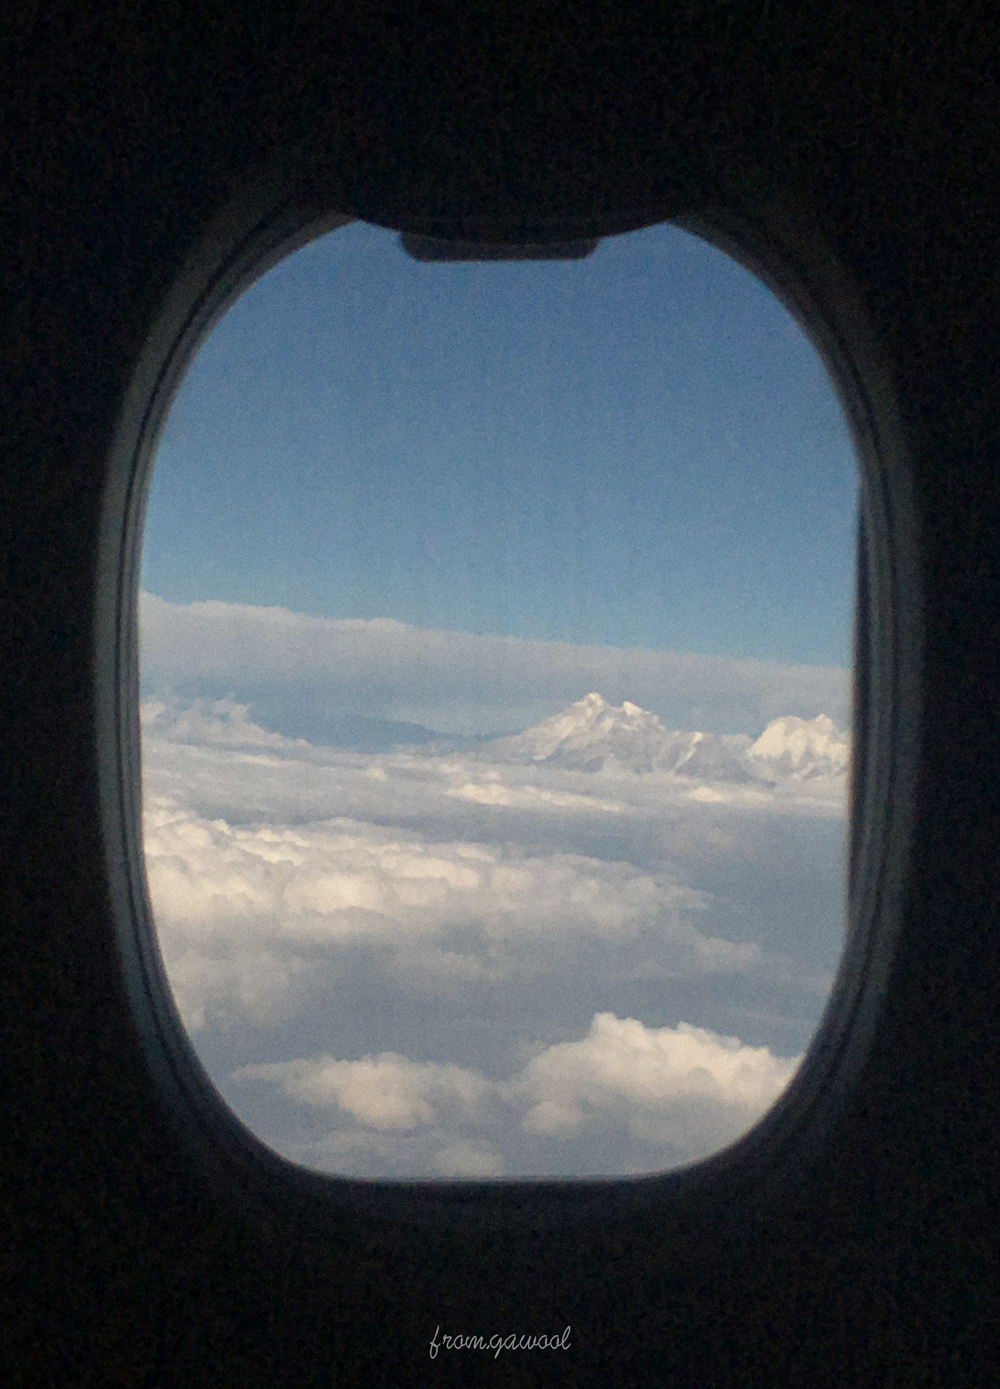 카트만두에서 방콕으로 향하던 비행, 창문에서 보이던 히말라야의 모습